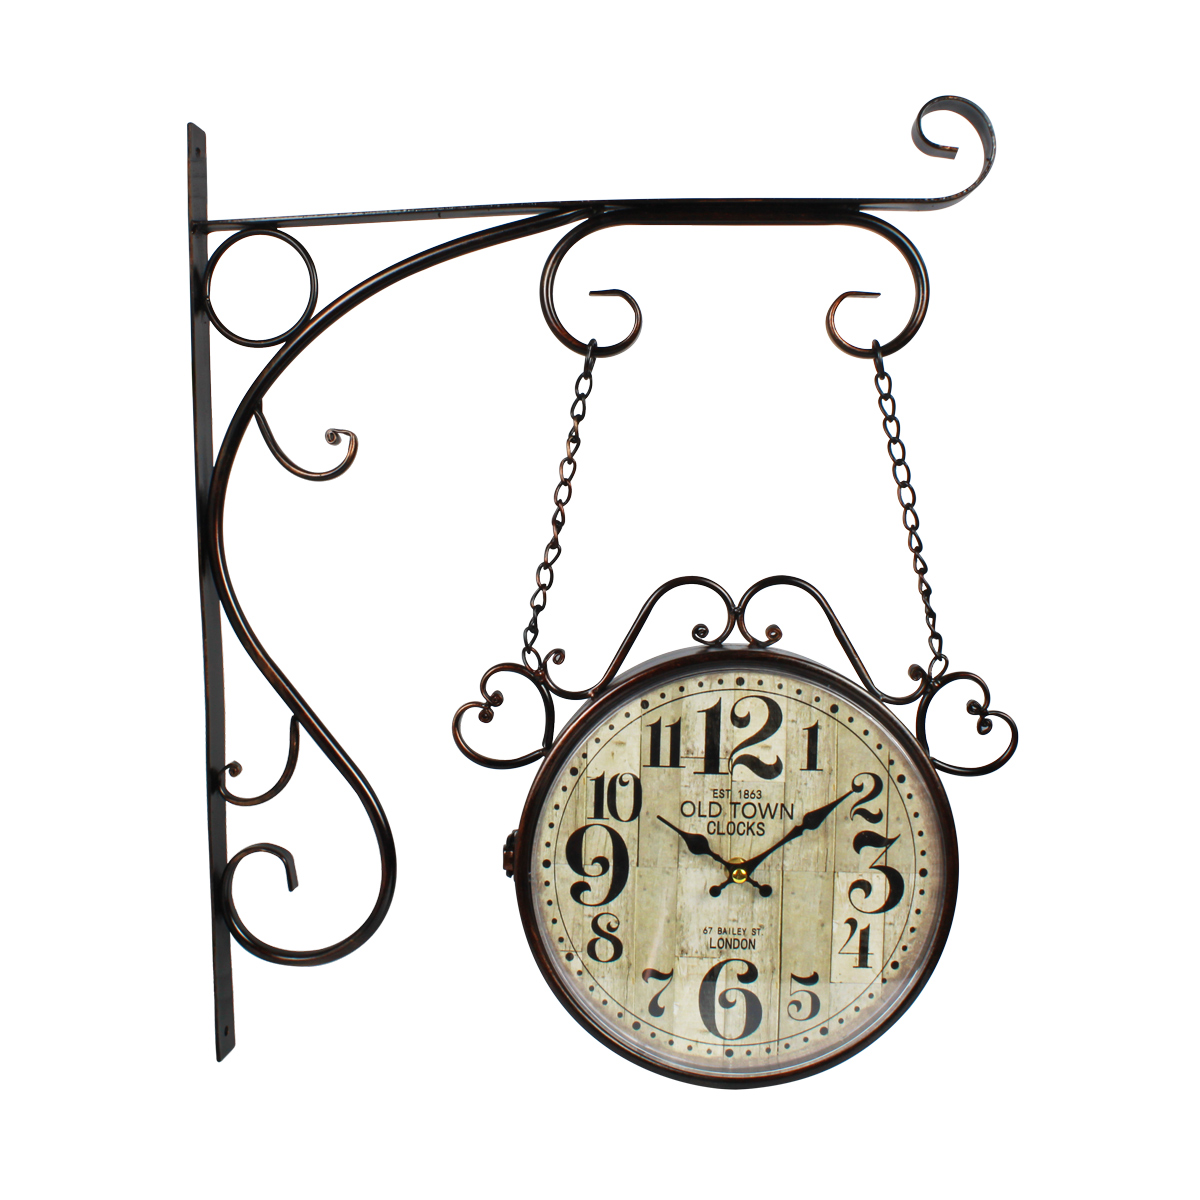 Relogio De Parede Estacao De Trem Old Town Clocks C/ Corrente 1863  - Grupo Solmaior